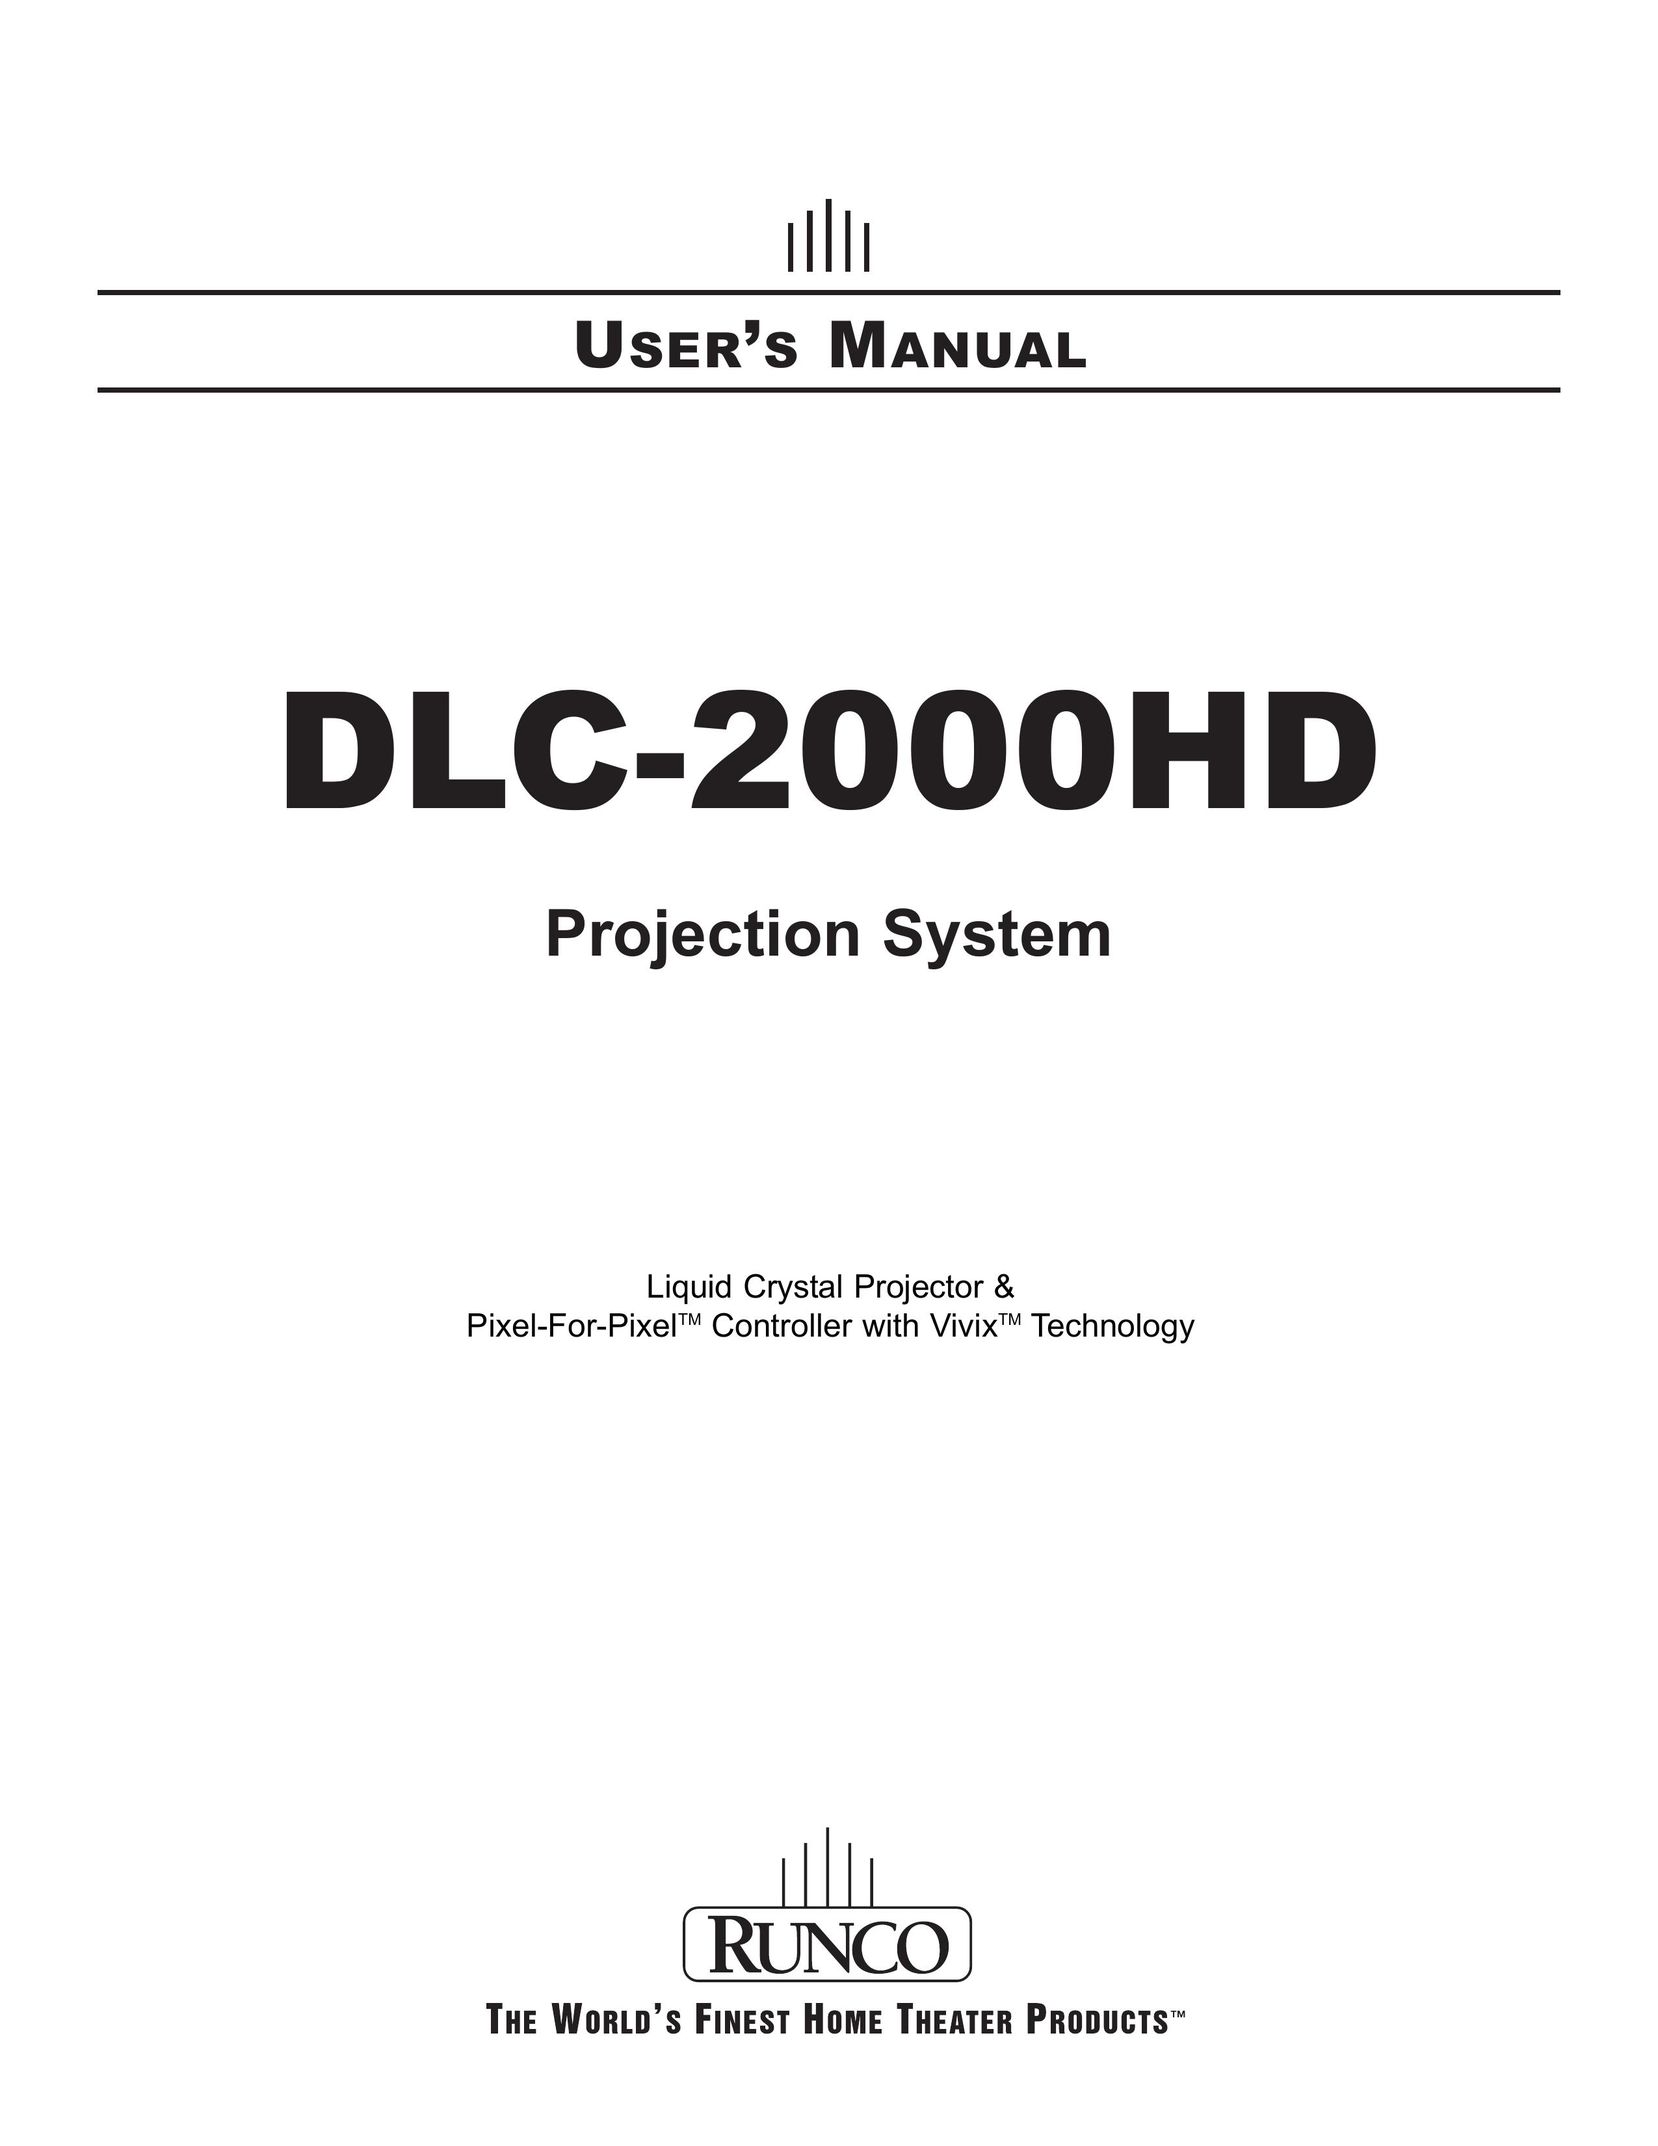 Runco DLC-2000HD Projector User Manual